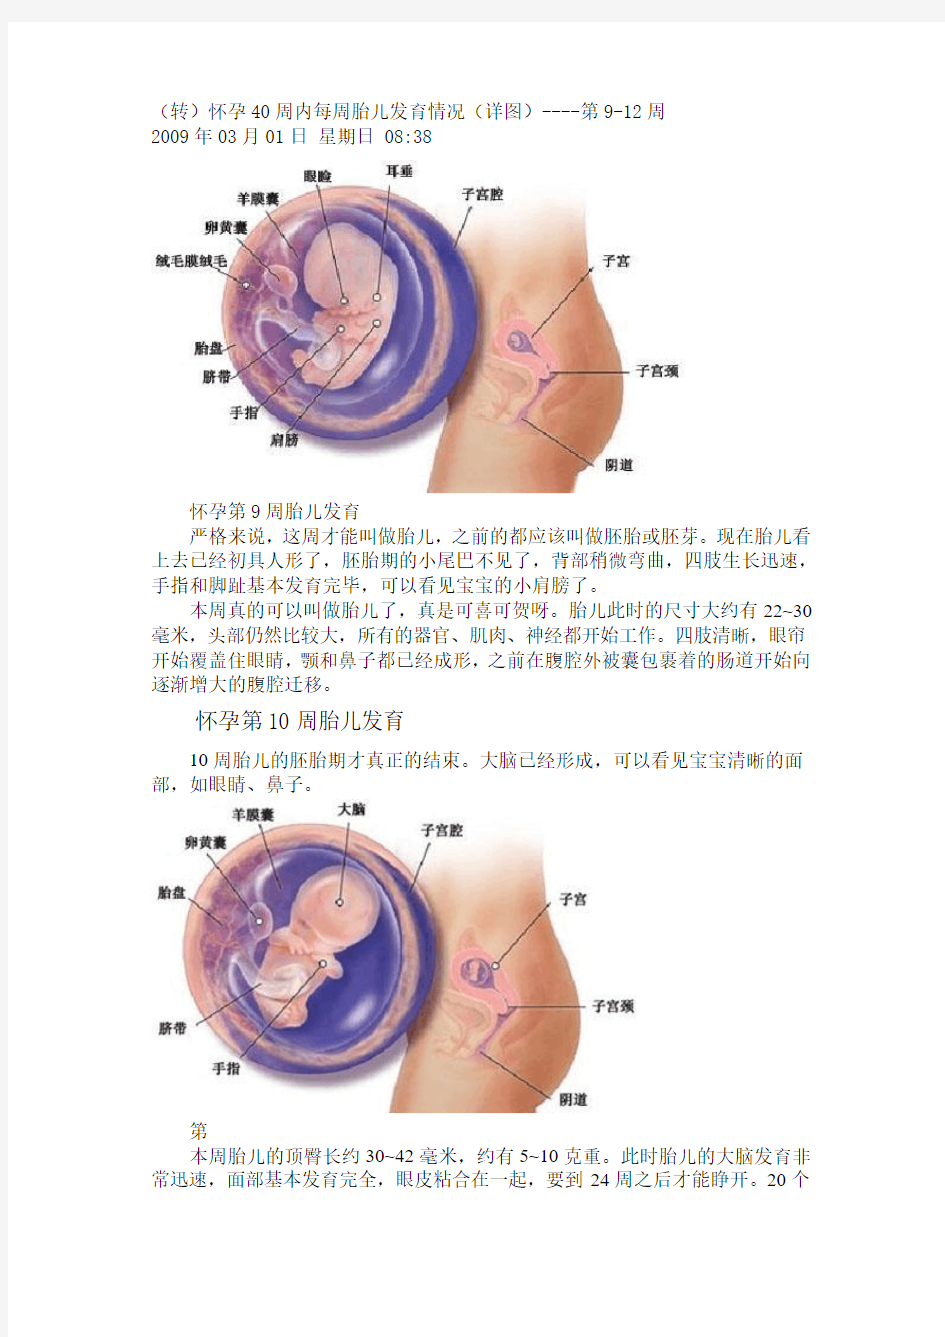 (转)怀孕40周内每周胎儿发育情况(详图)----第9-12周